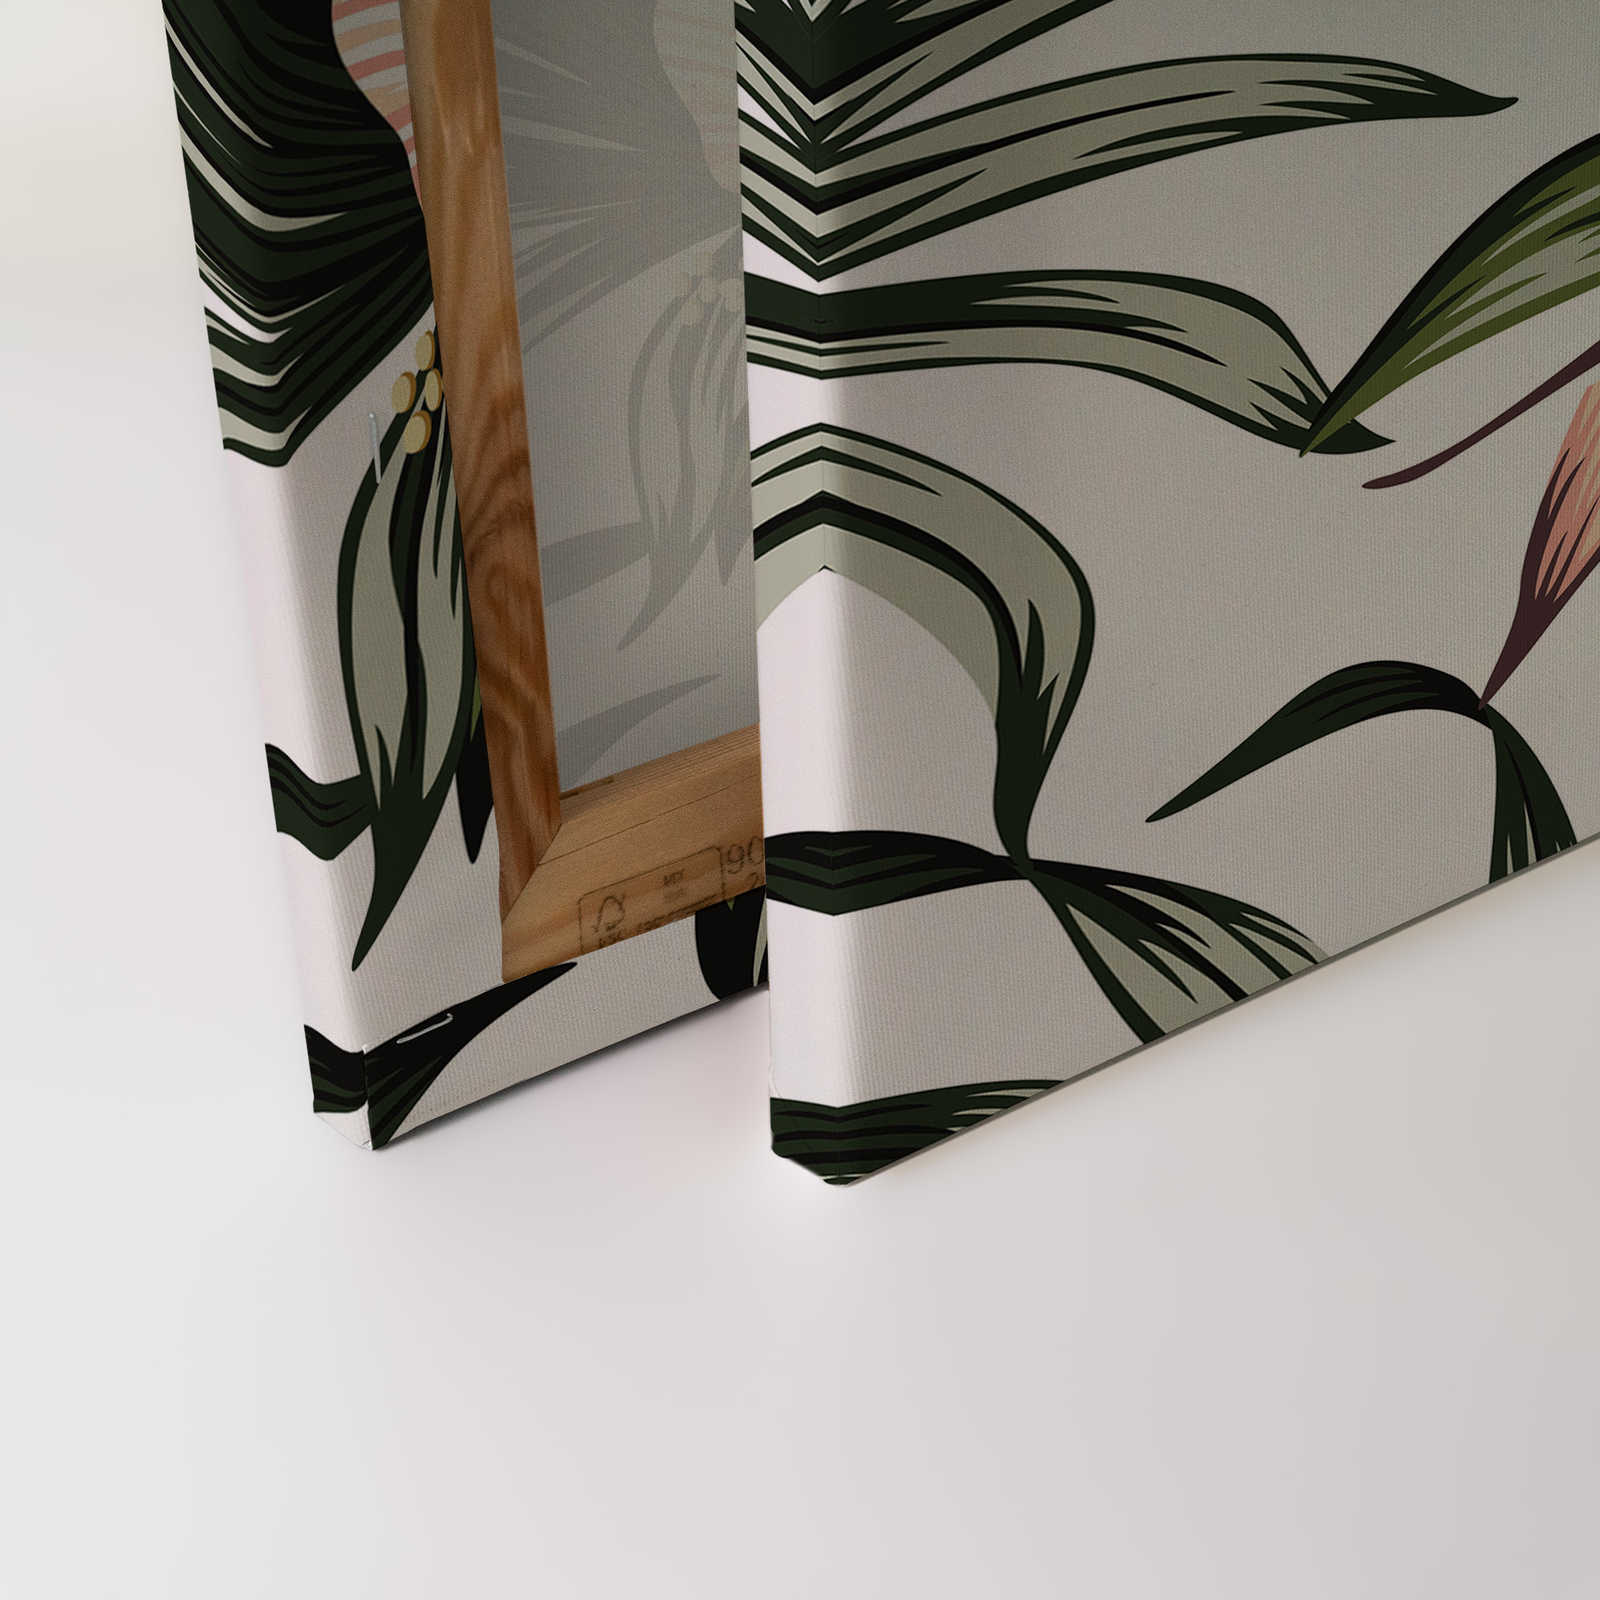             Leinwand mit Dschungelpflanzen und Pelikan | Weiß, Rosa, Grün – 0,90 m x 0,60 m
        